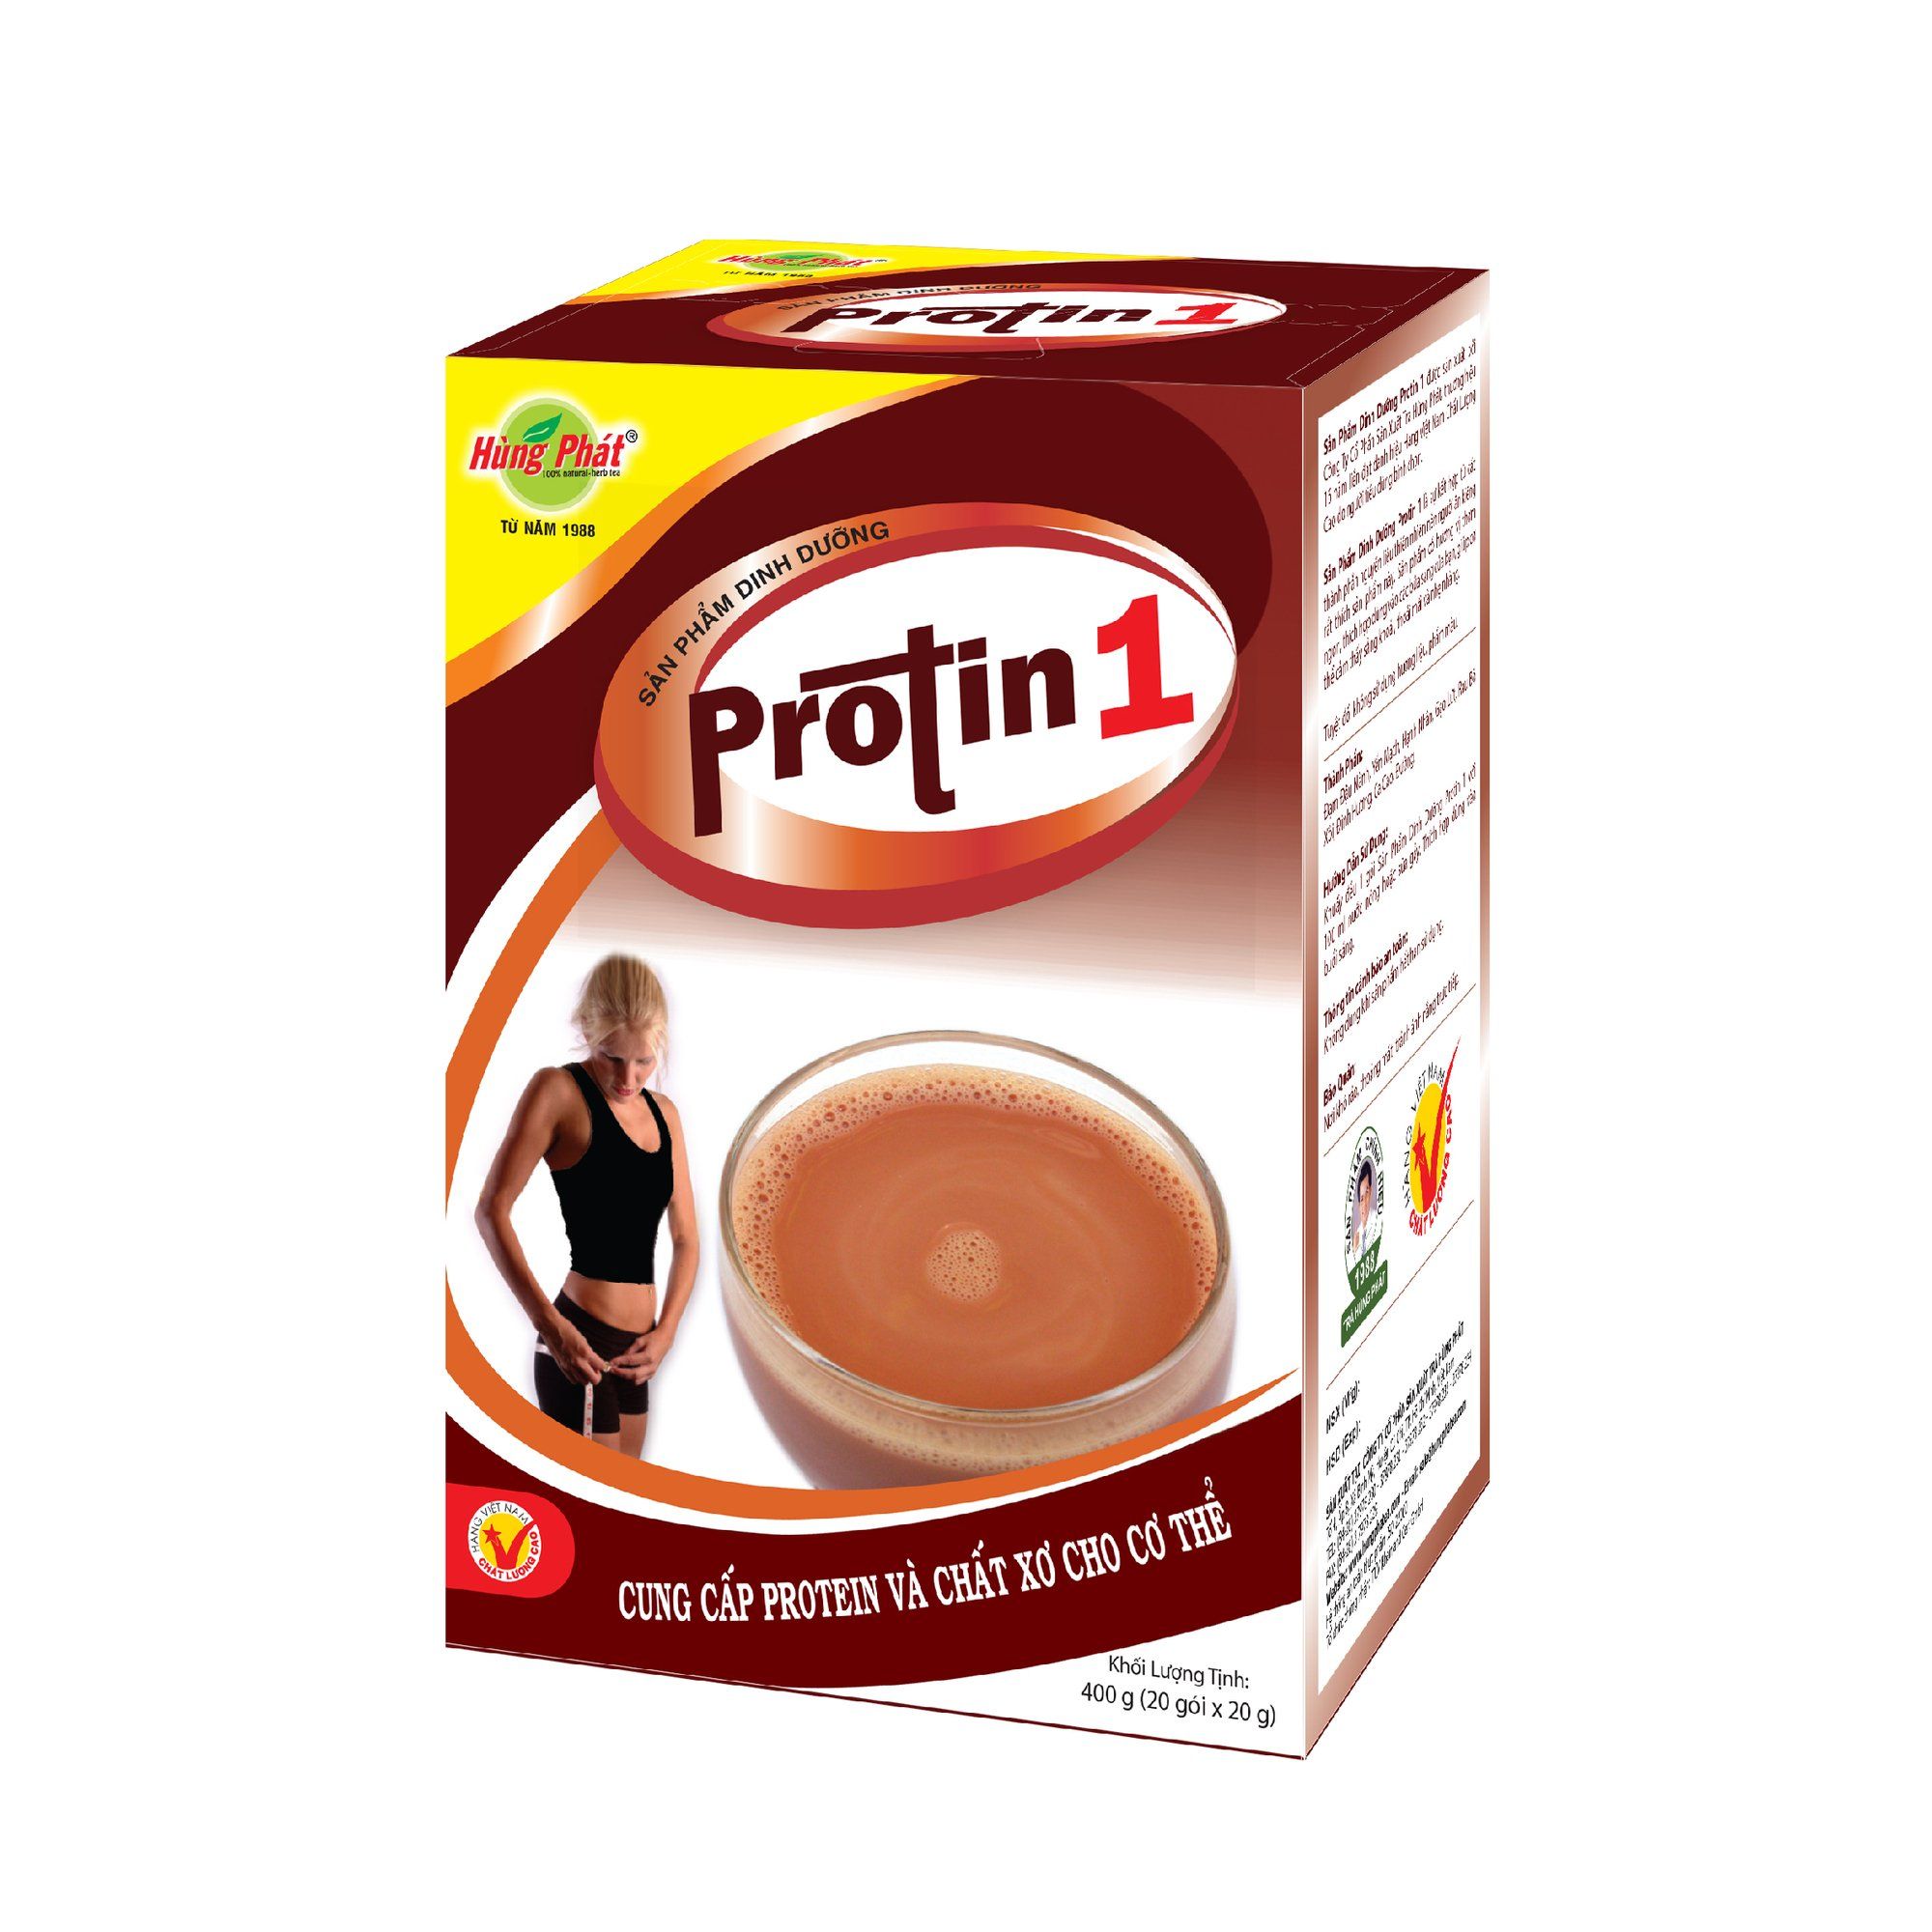  Protin 1 